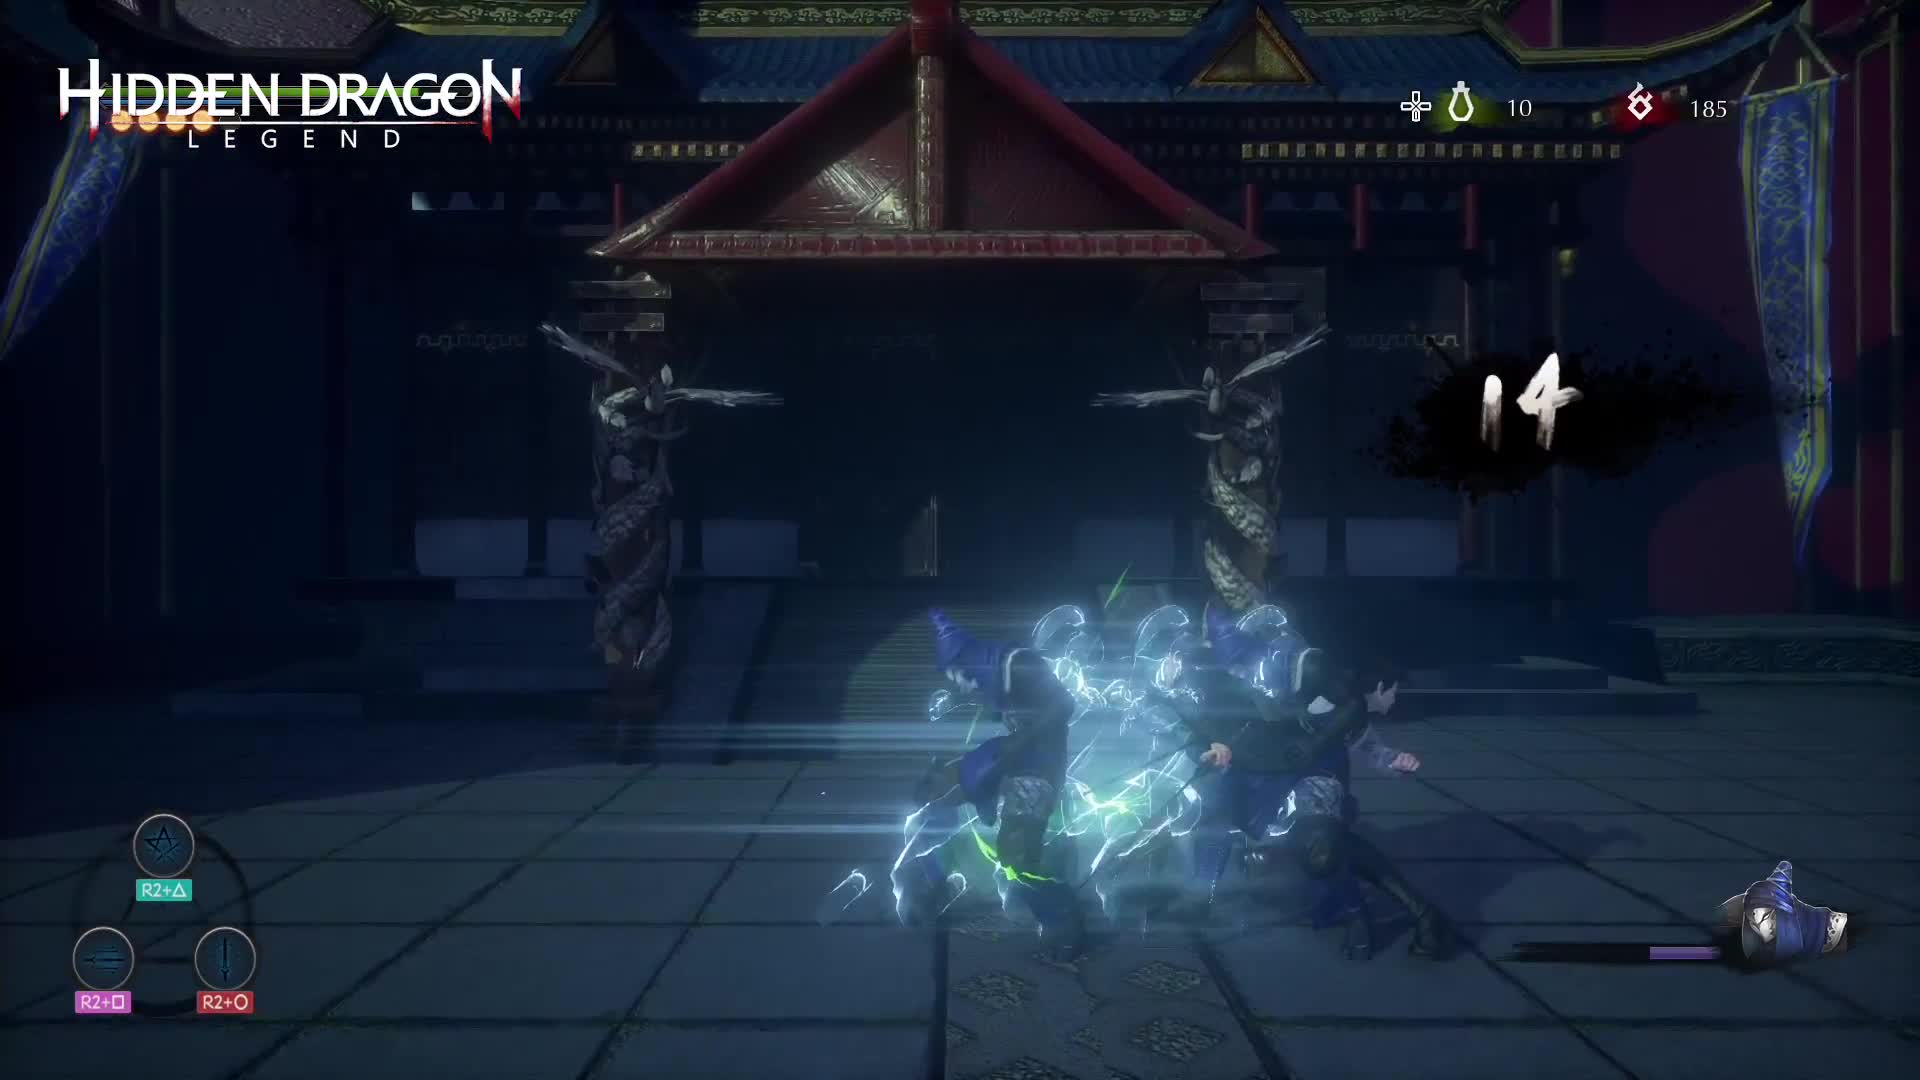 Hidden Dragon Legend - PS4 Launch